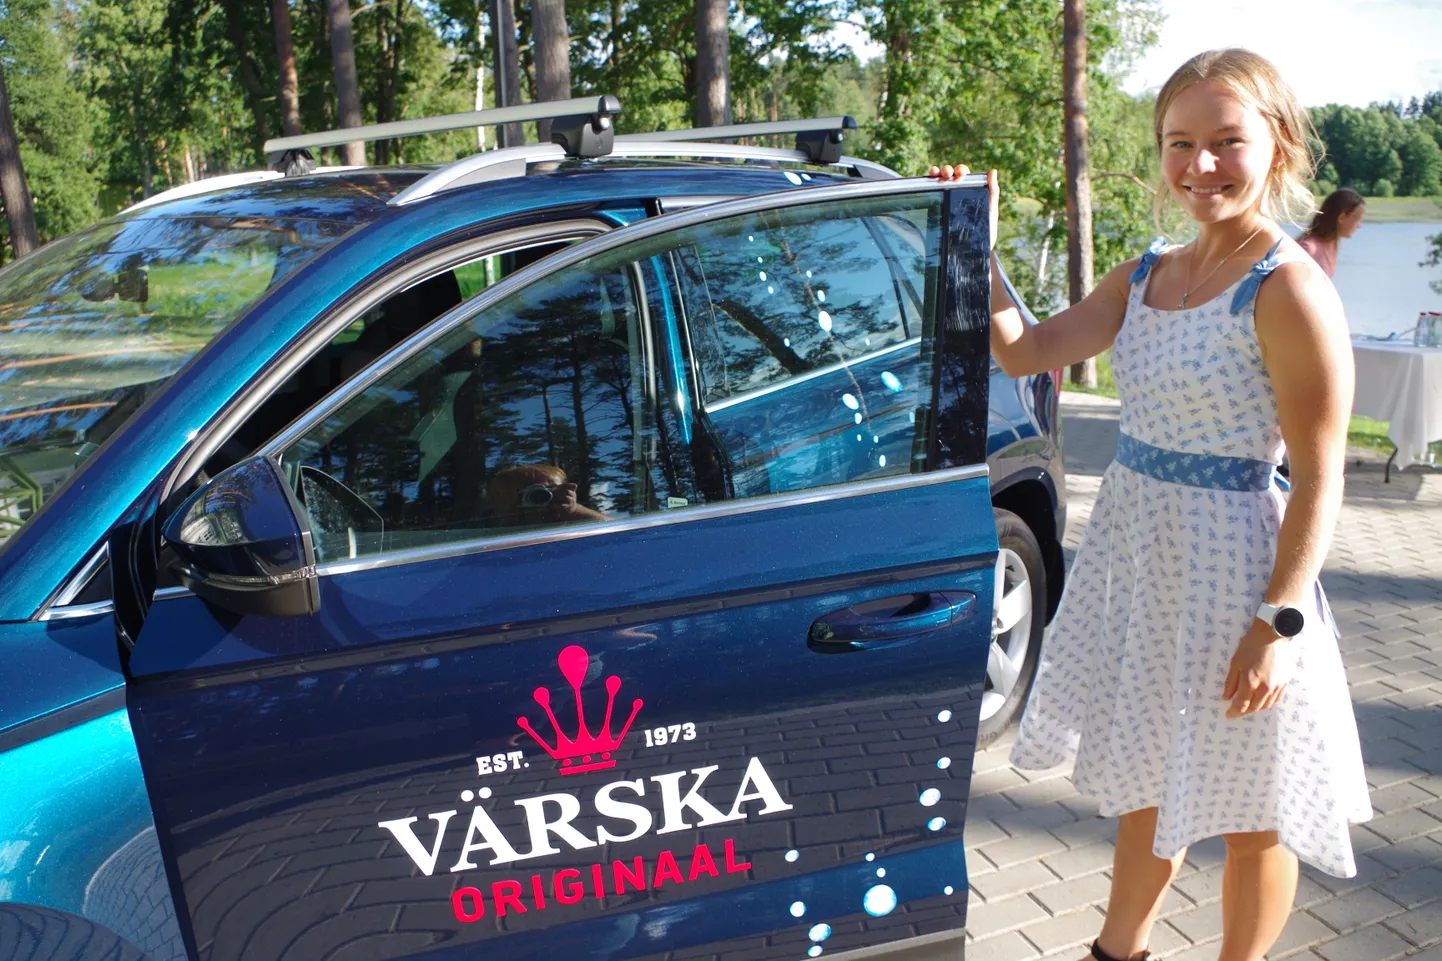 Preemiaks maailmameistri tiitli eest kinkis AS Värska Vesi Daisy Kudrele uue auto.